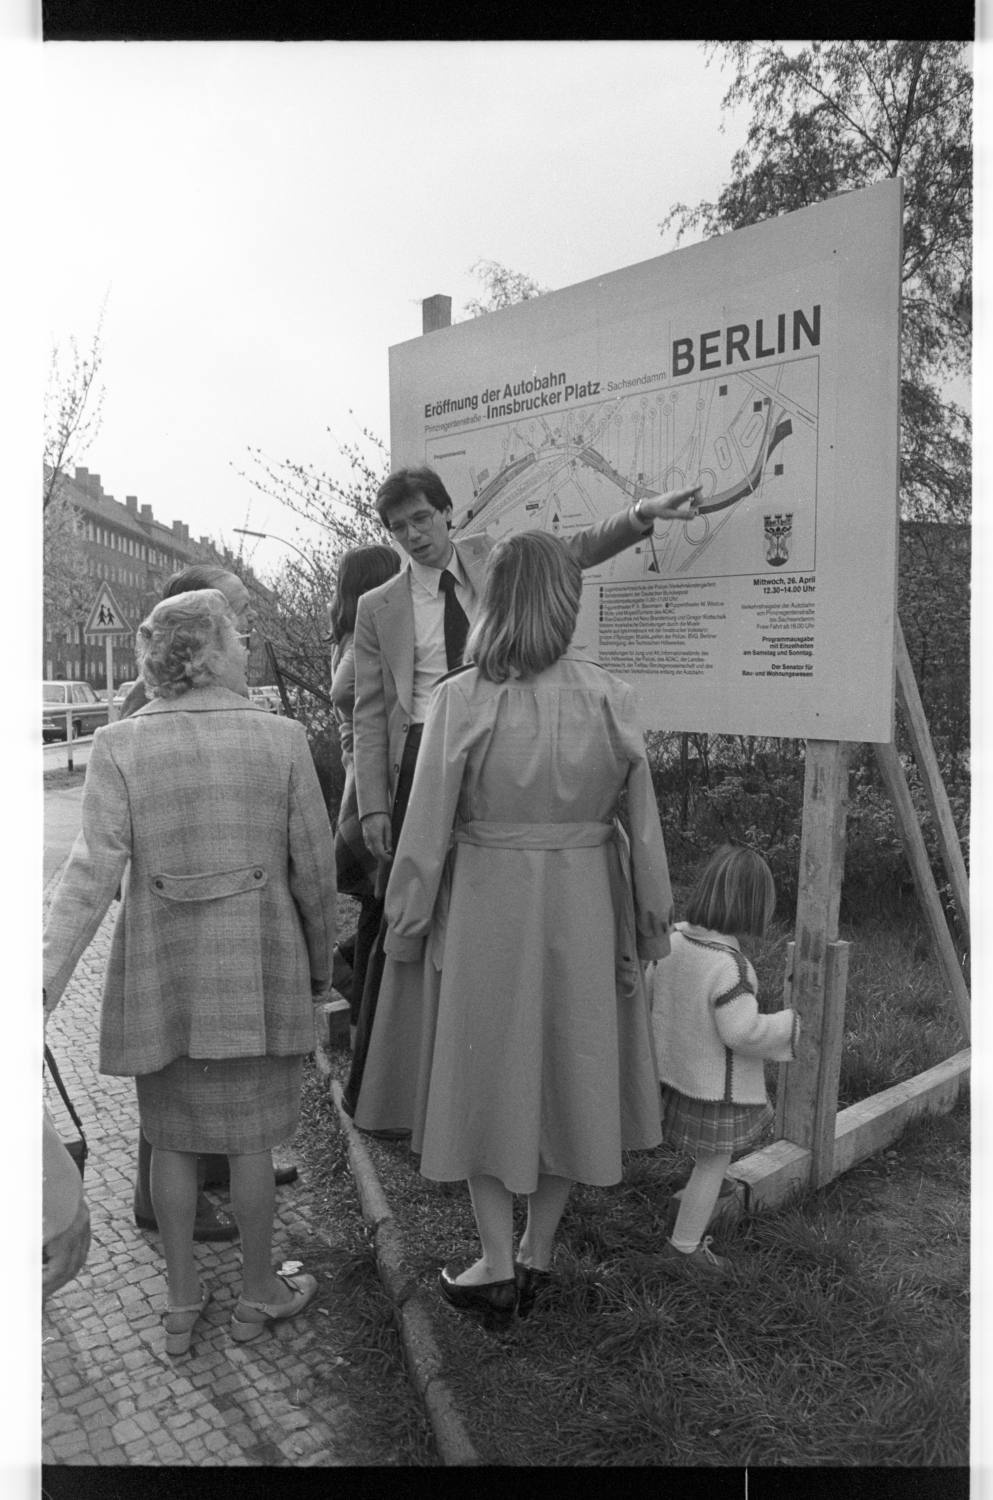 Kleinbildnegative: Informationstafel, Eröffnung der Stadtautobahn, Innsbrucker Platz, 1978 (Museen Tempelhof-Schöneberg/Jürgen Henschel RR-F)